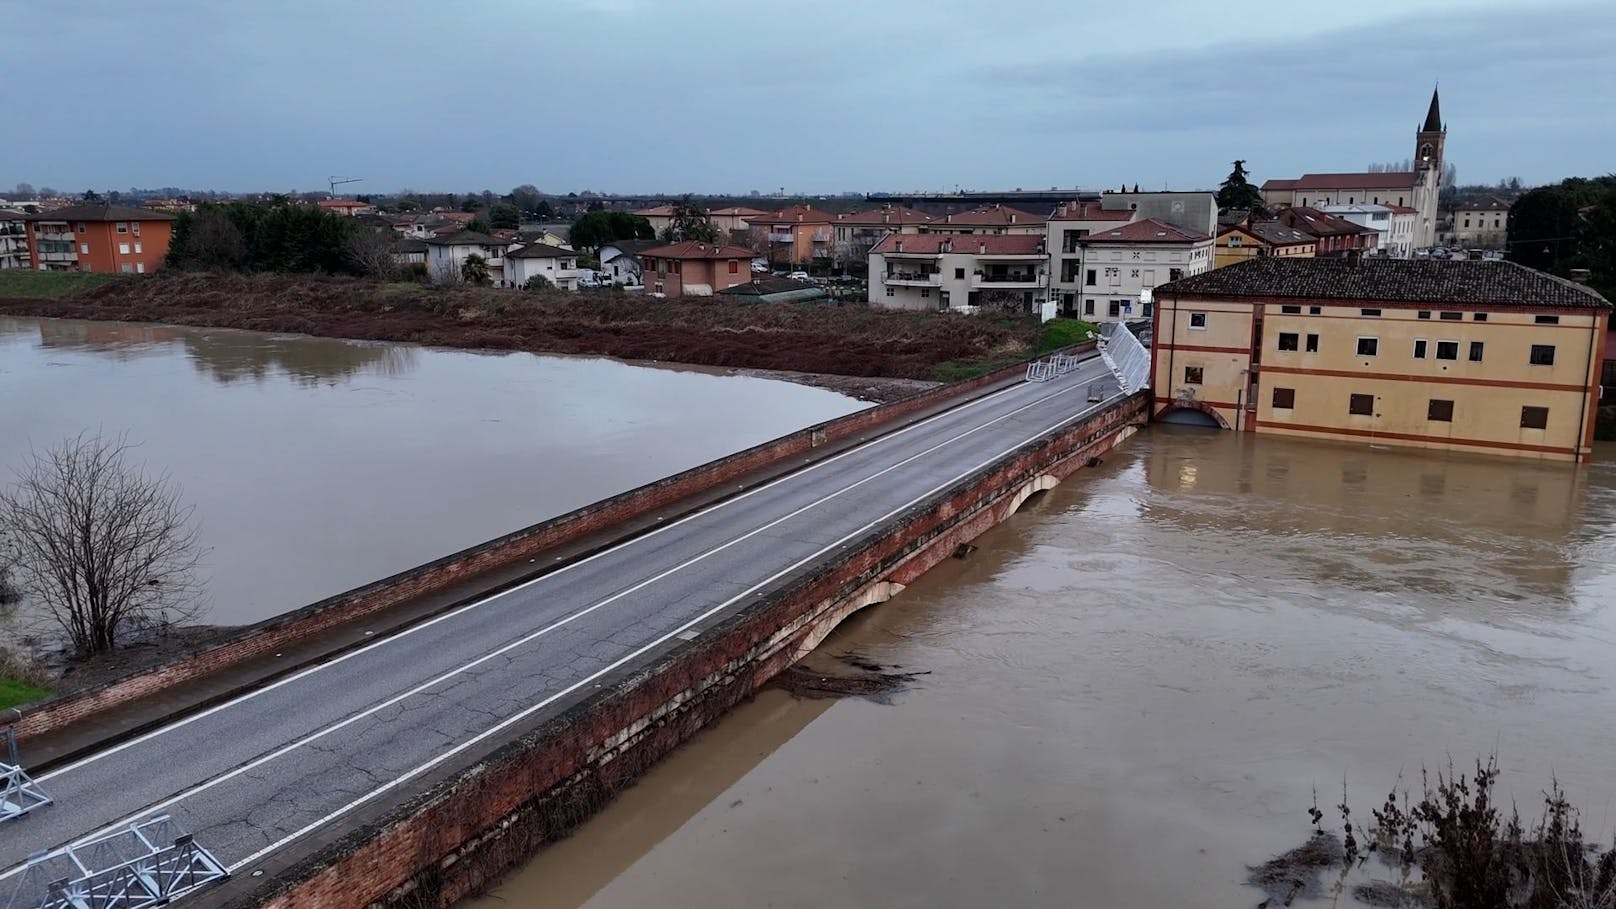 Hochwasser könnte 355 Jahre alte Brücke zerstören